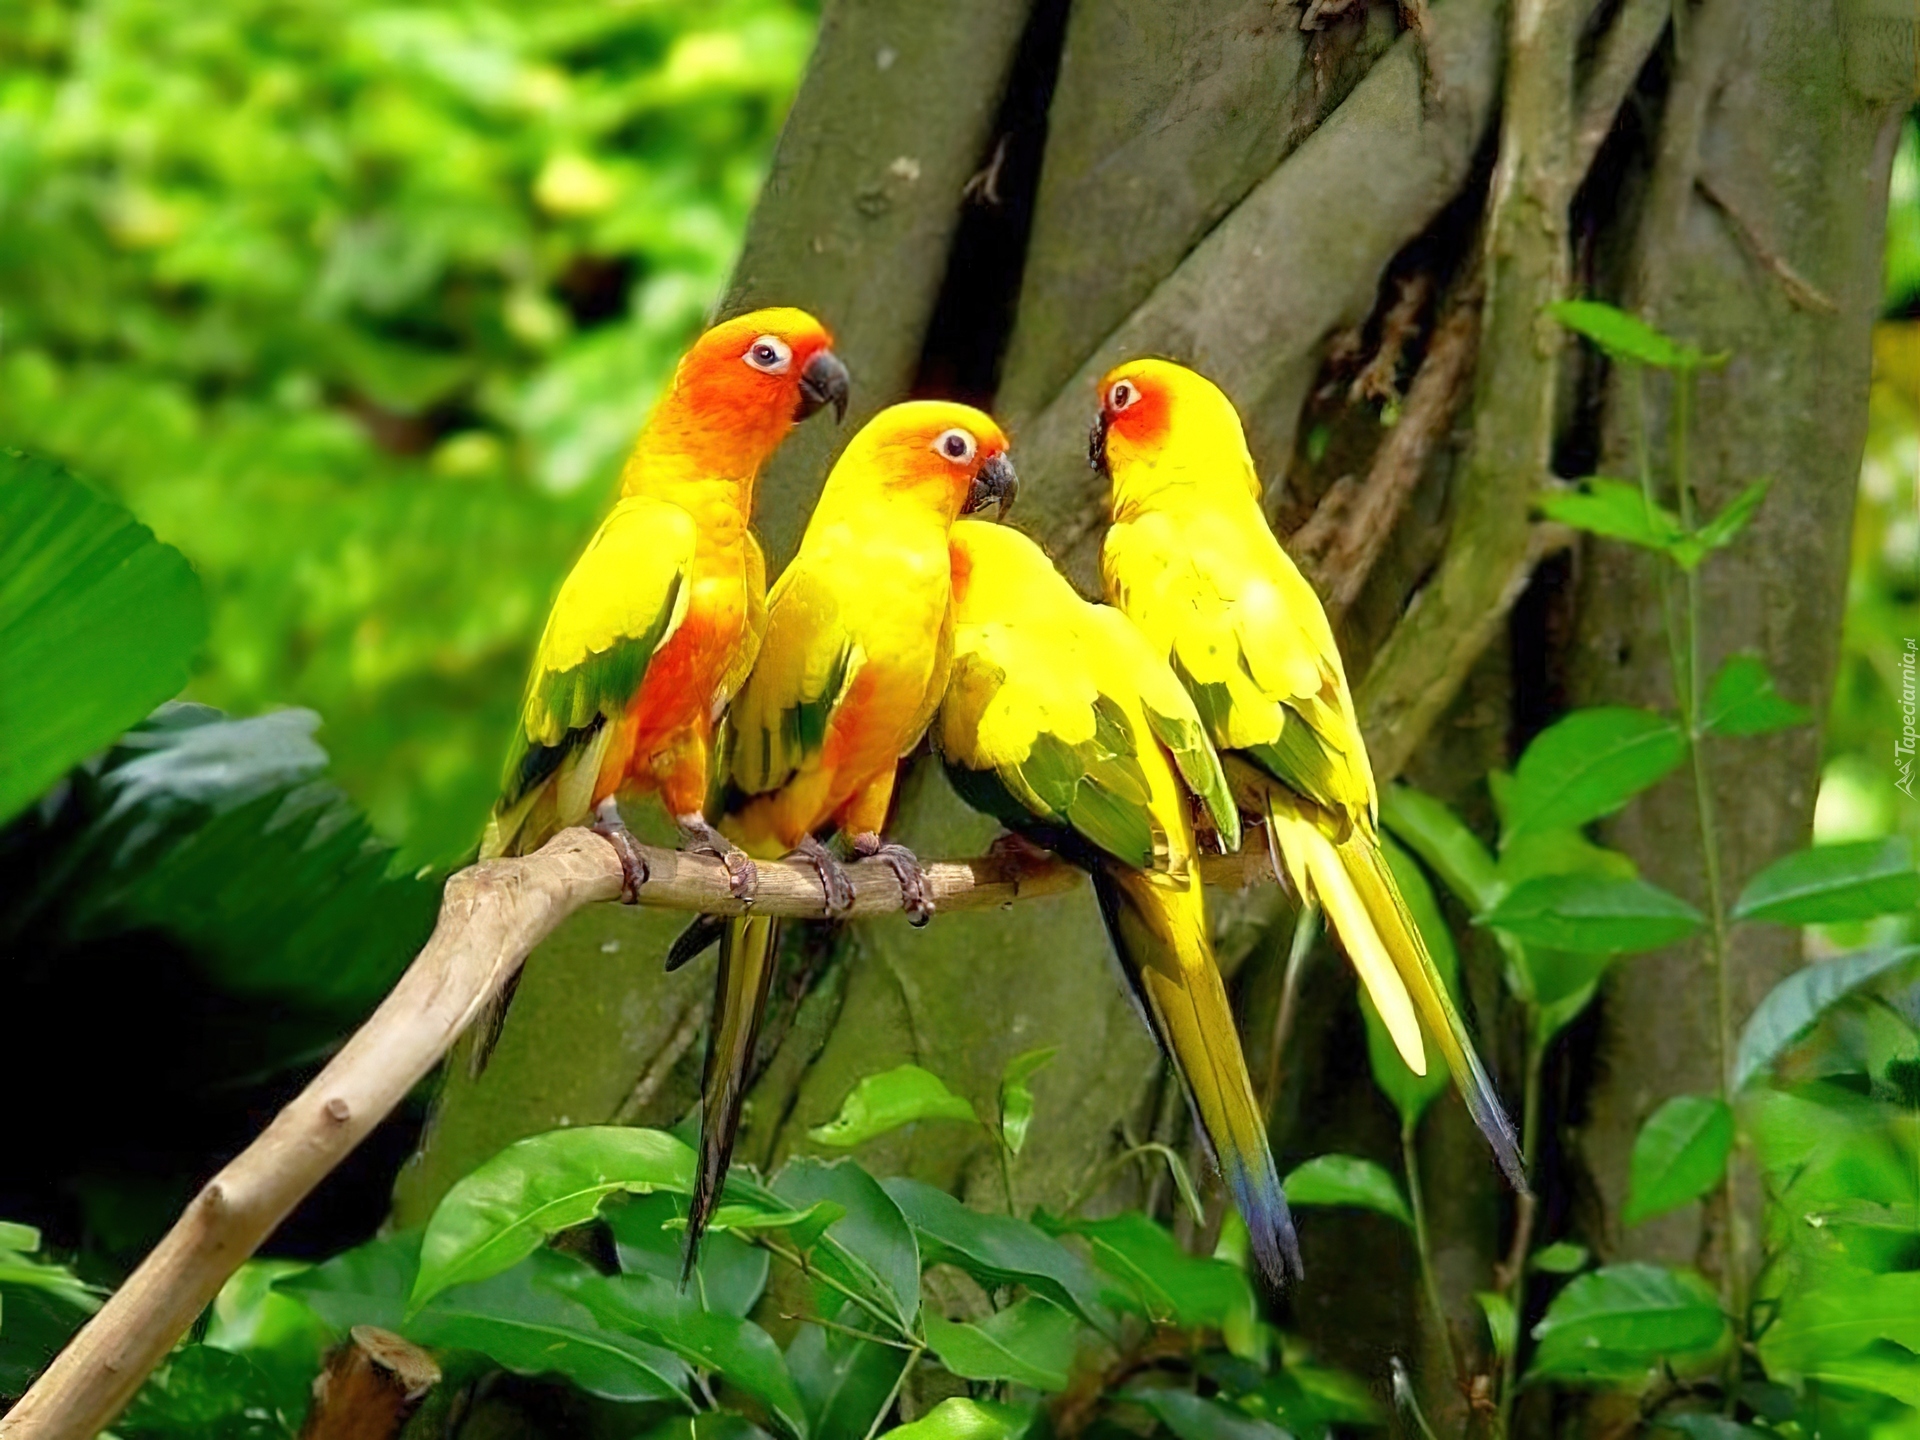 Сколько попугаев в мире